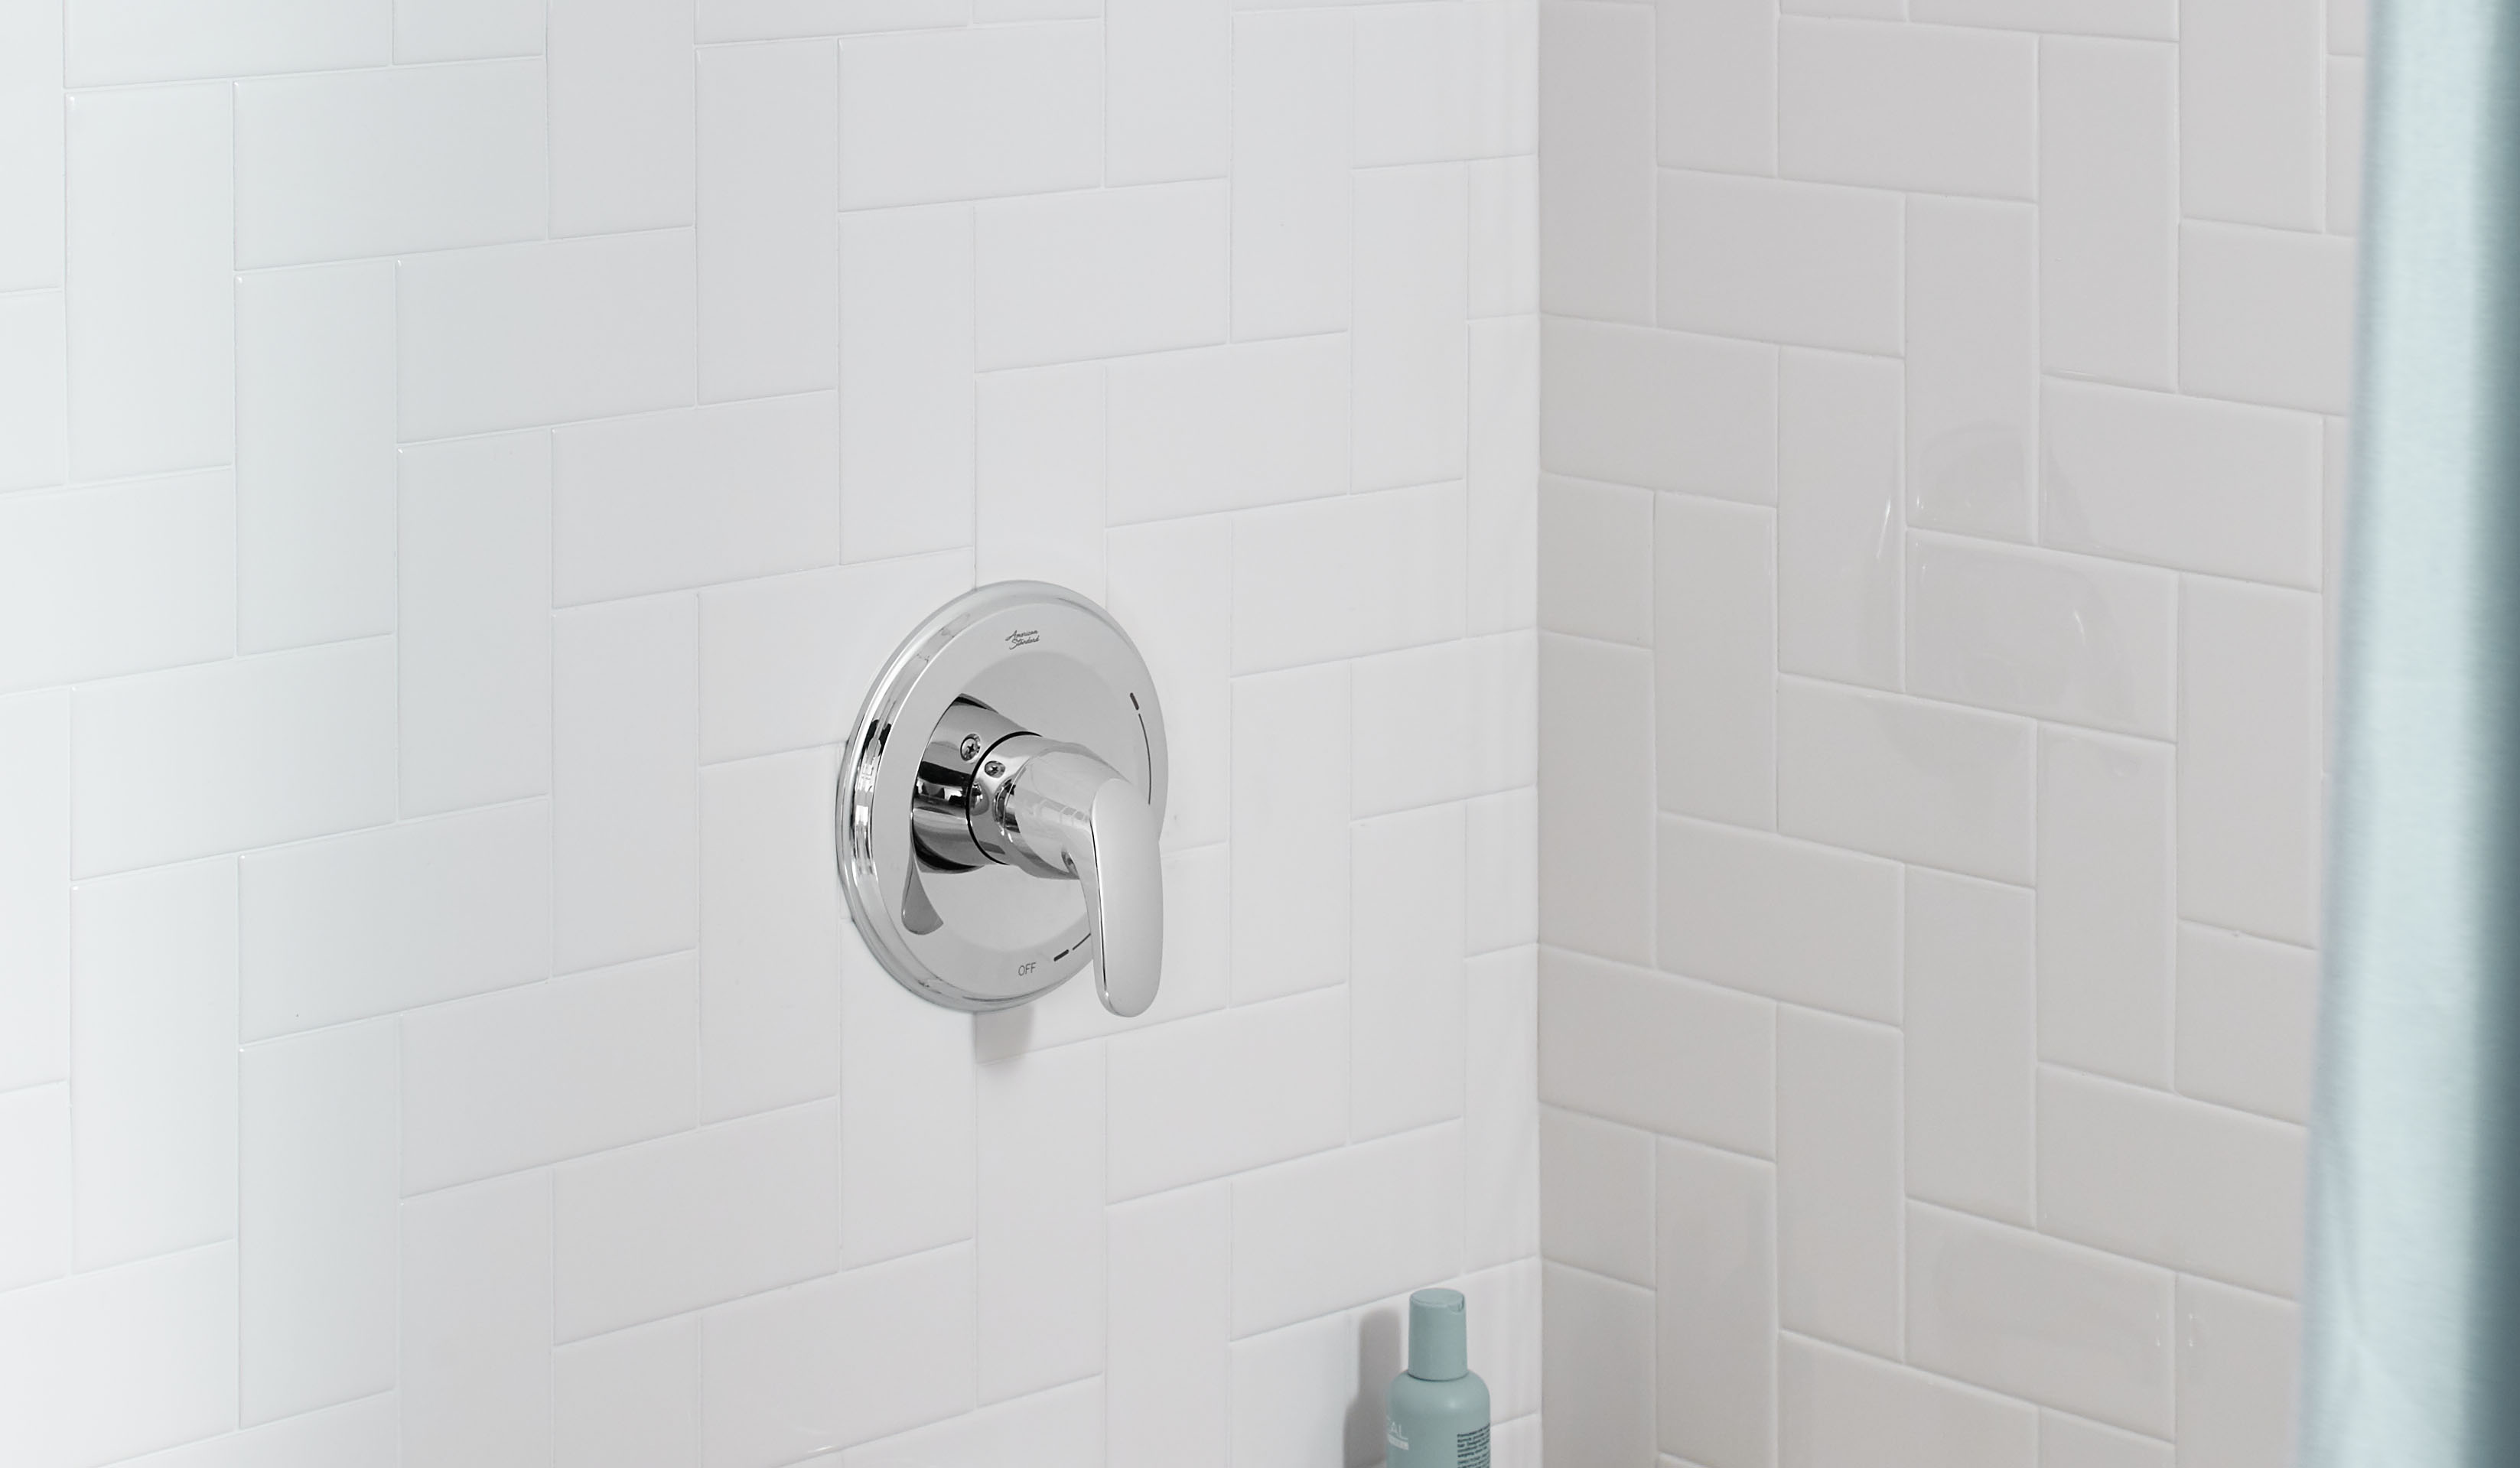 ColonyMC PRO - Ensemble de robinetterie pour baignoire/douche 1,75 gpm/6,6 L/min incluant une pomme de douche à économie d'eau, une cartouche à pression équilibrée en double céramique et une poignée à levier